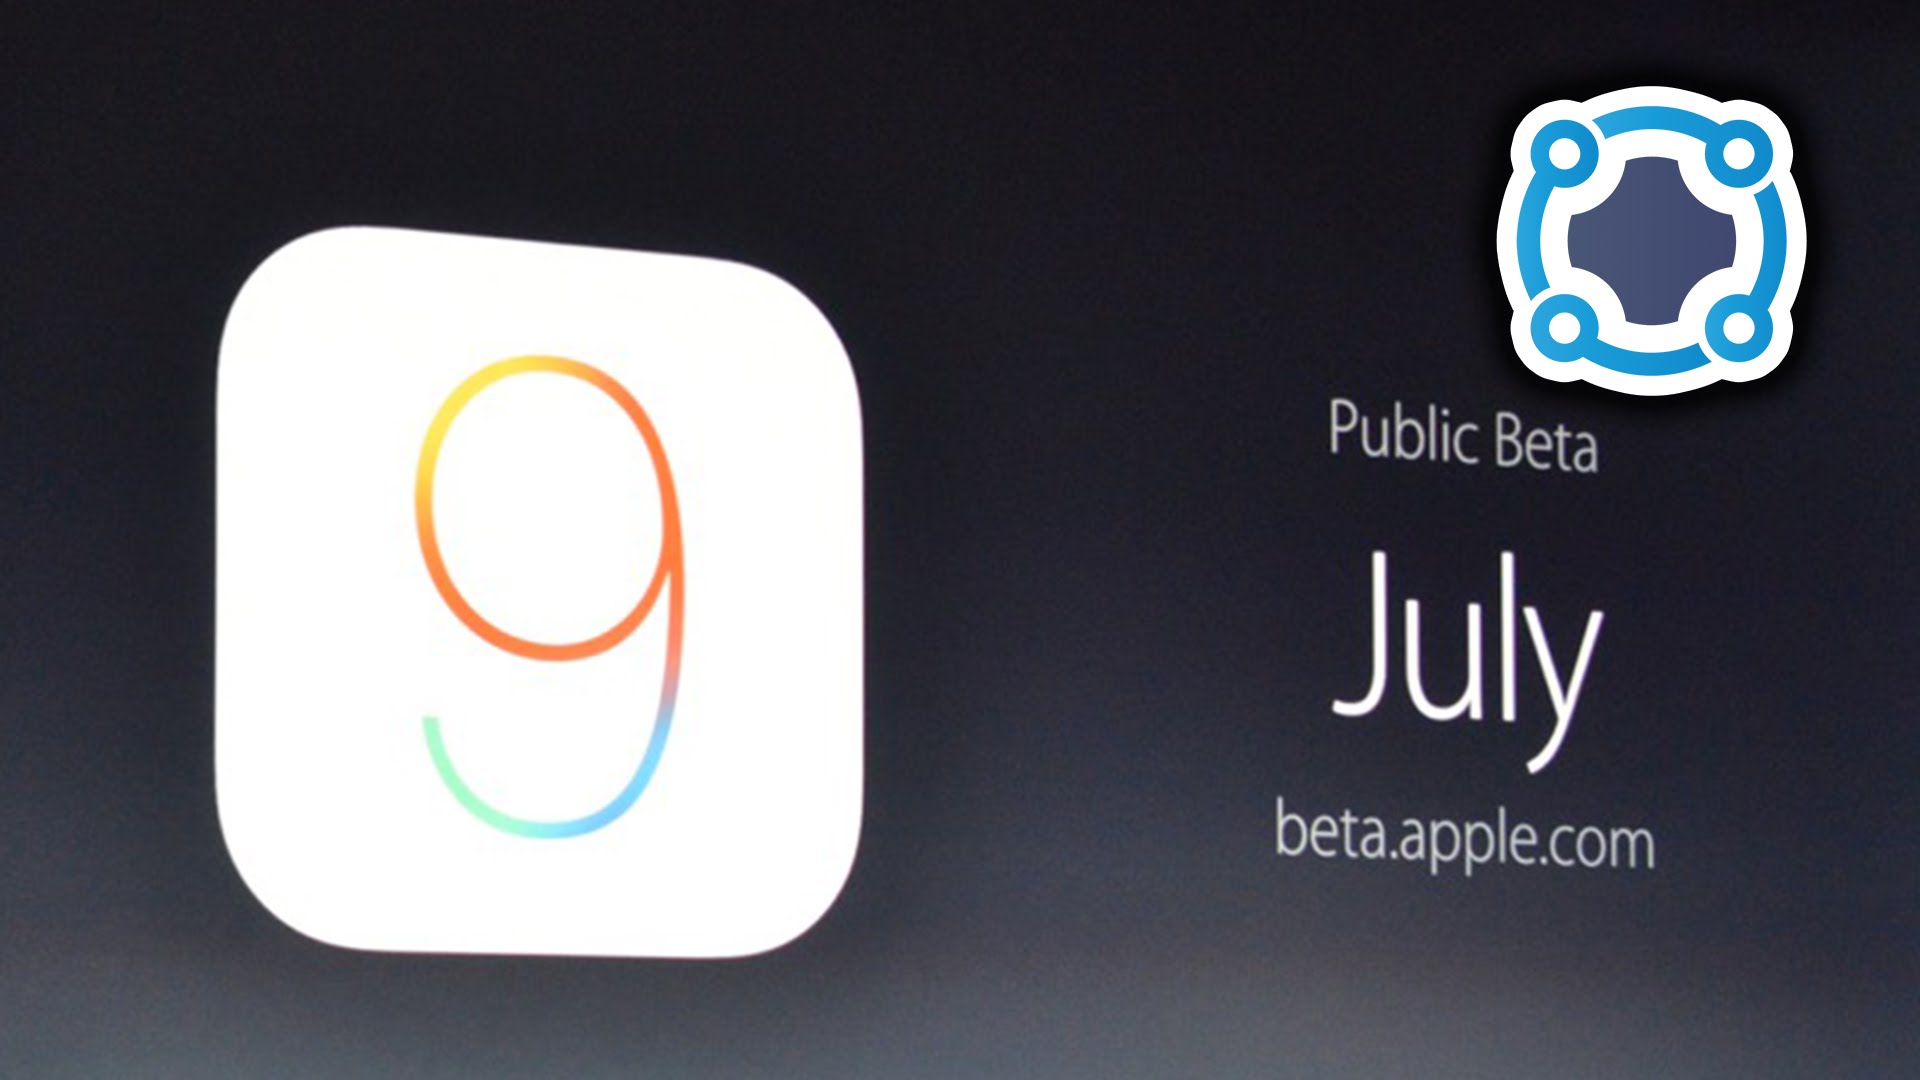 Apple iOS 9 - WWDC 2015 Keynote Recap